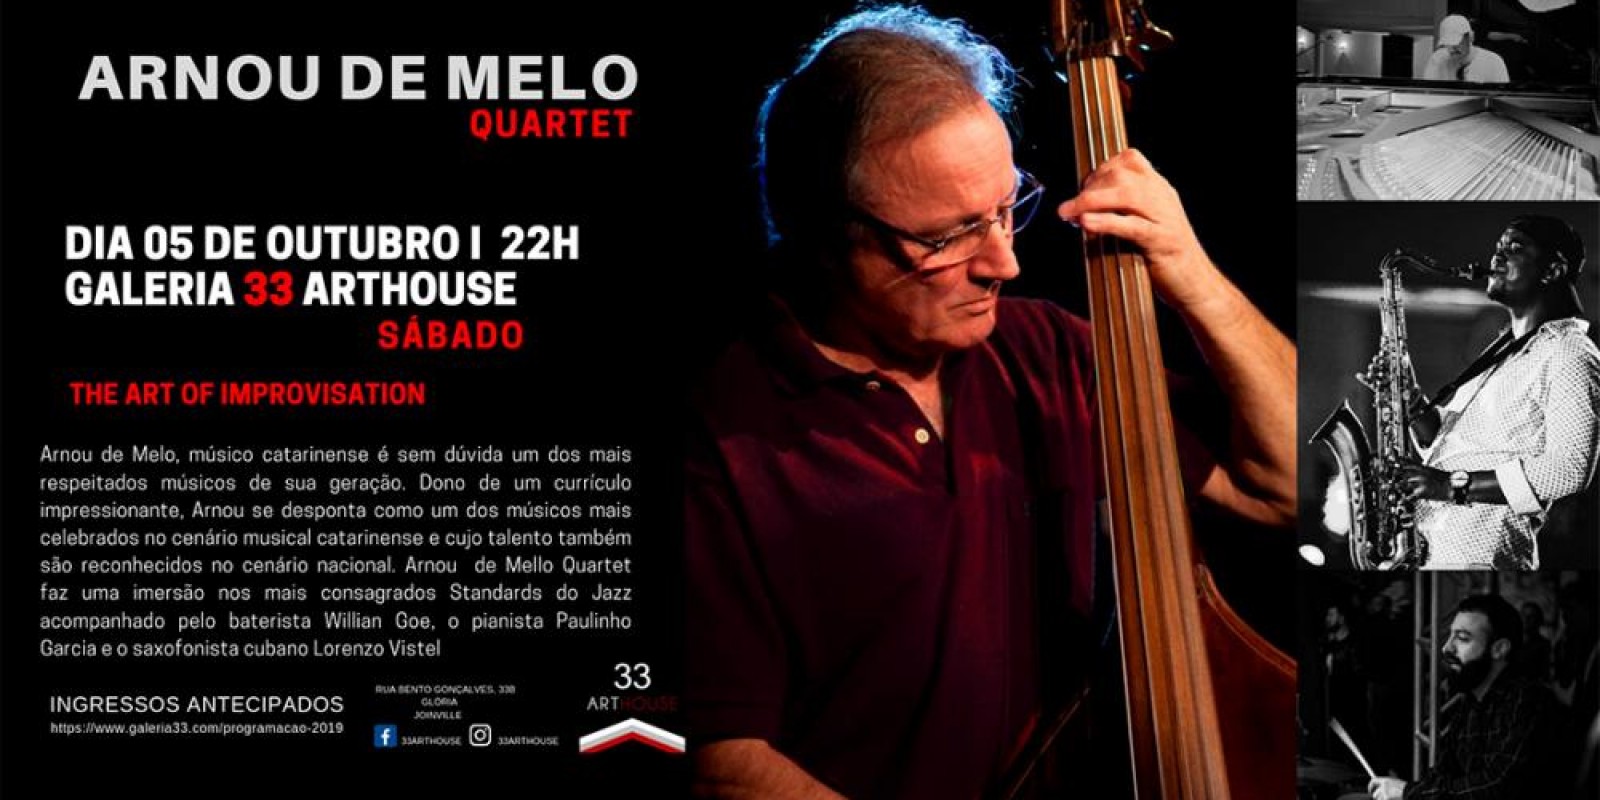 Show Arnou de Mello – Quartet